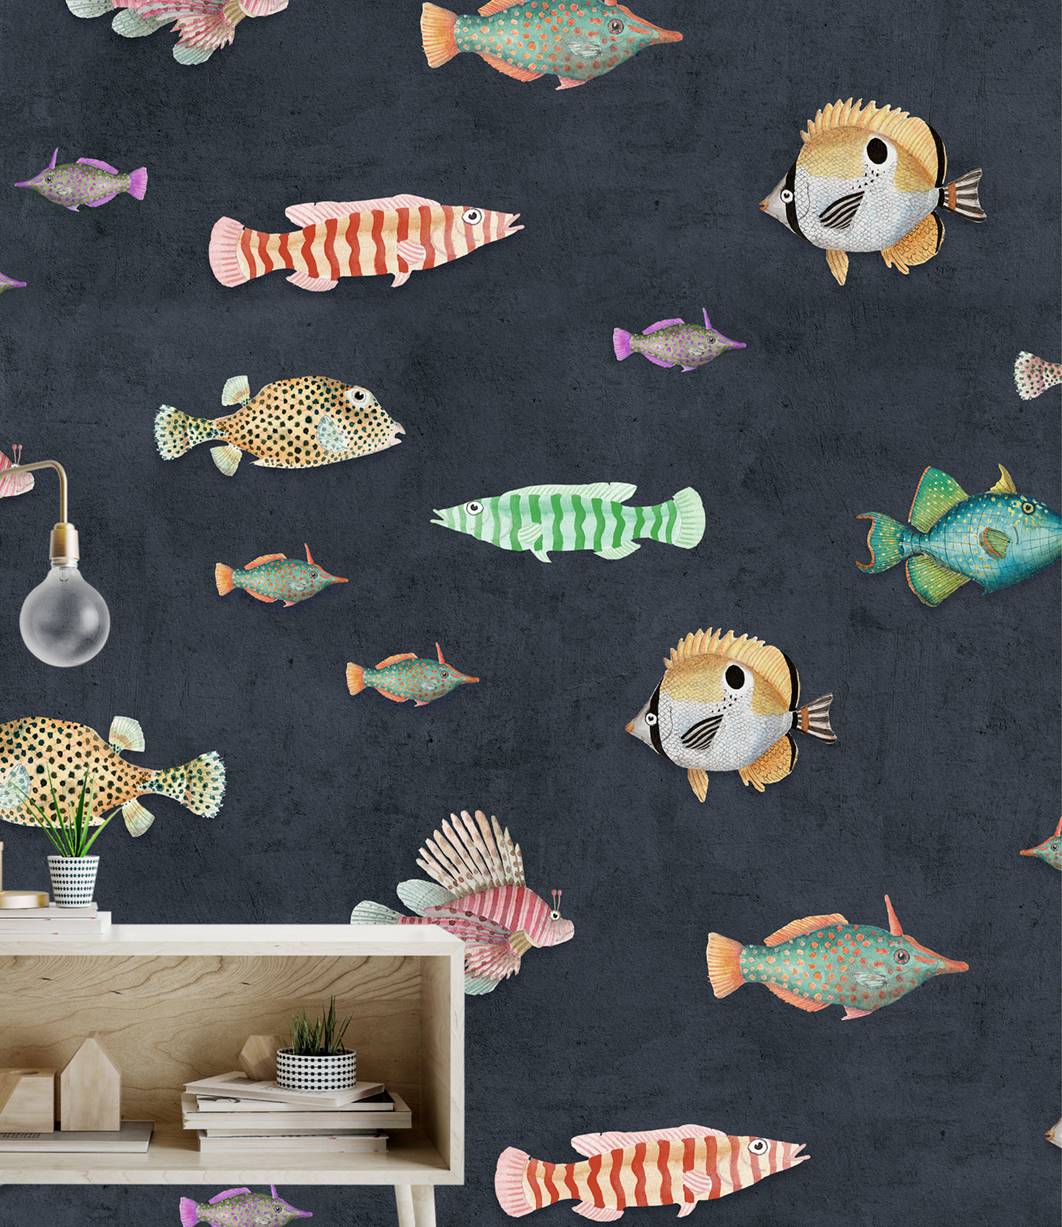 beragam spesies ikan menjadi inspirasi wallpaper